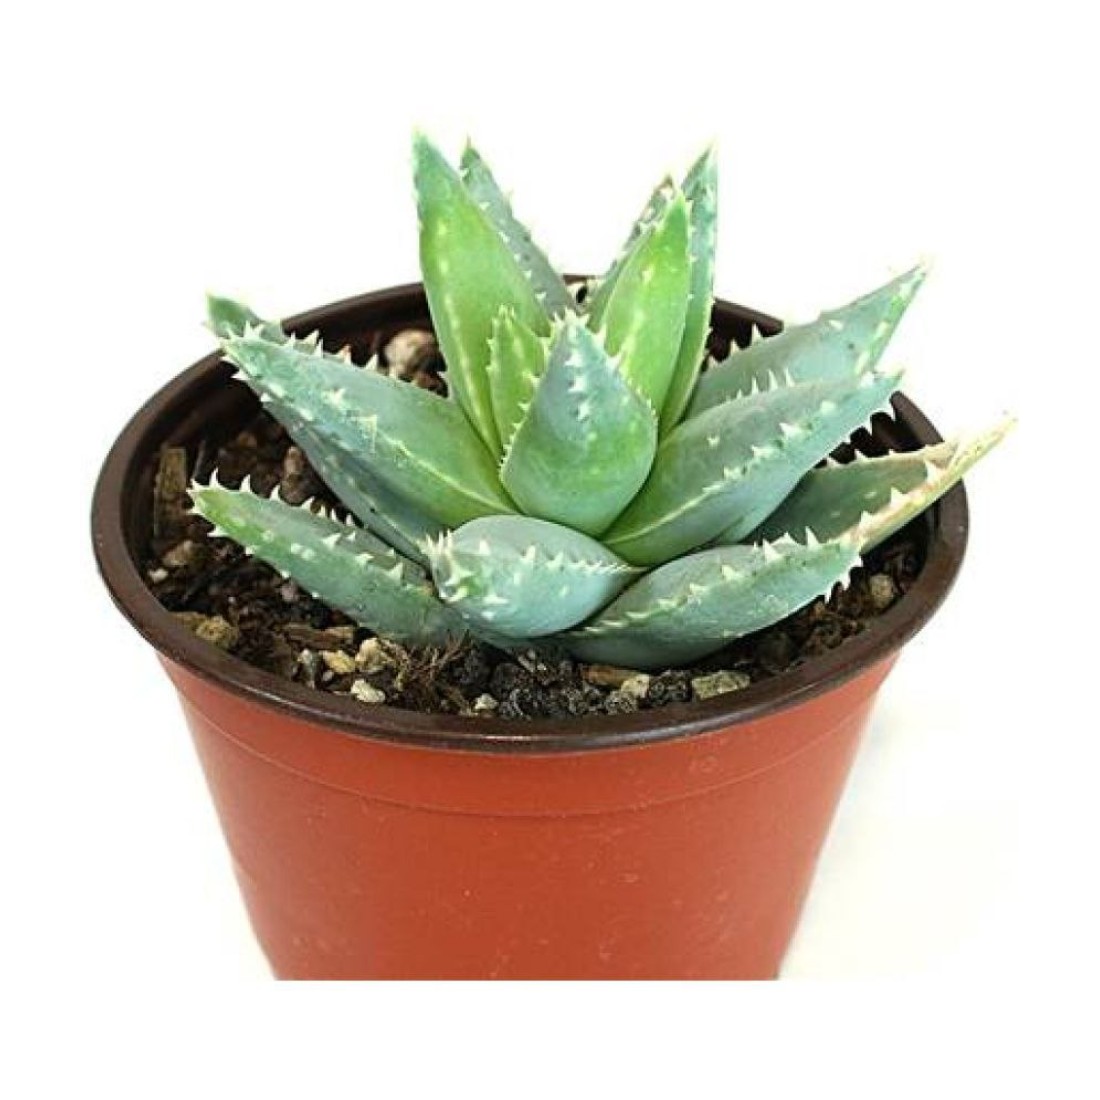 Aloe brevifolia Short-leaved Aloe rare succulent healthy live plant 4 inches in white plastic pot